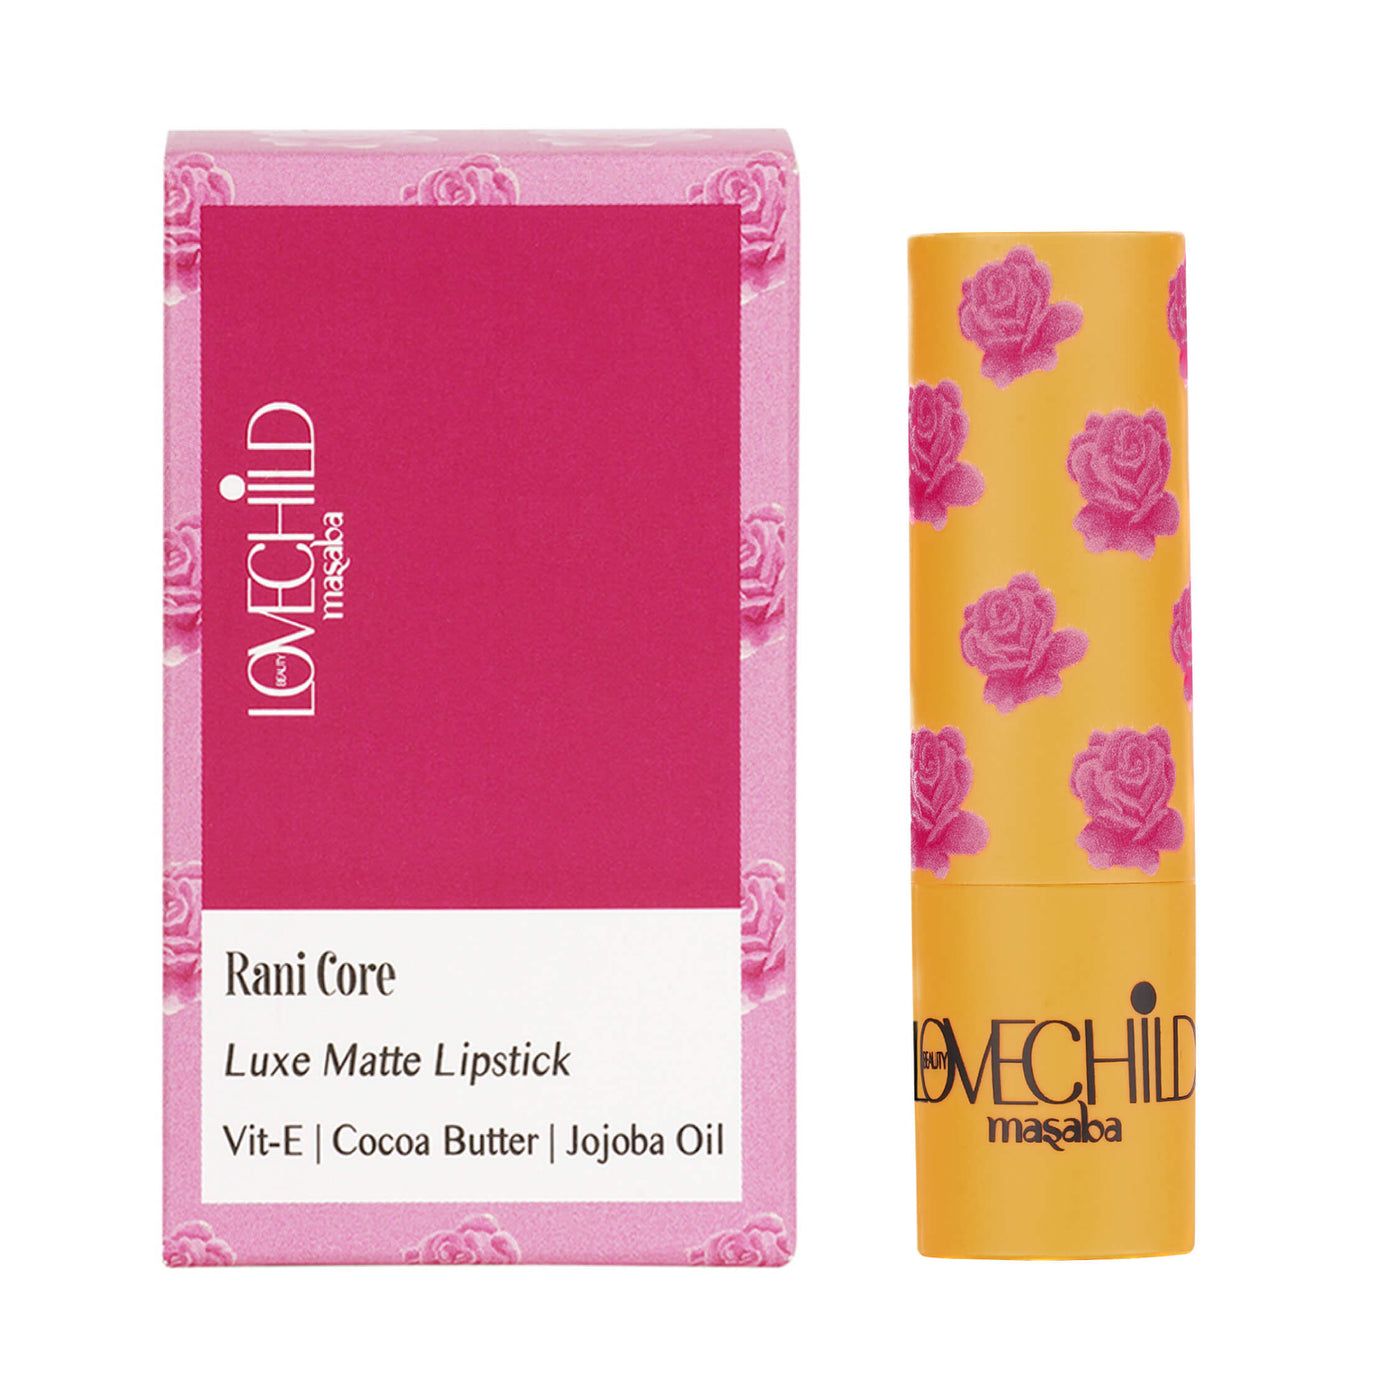 Rani Core Luxe Matte Lipstick  Peri-peri pink